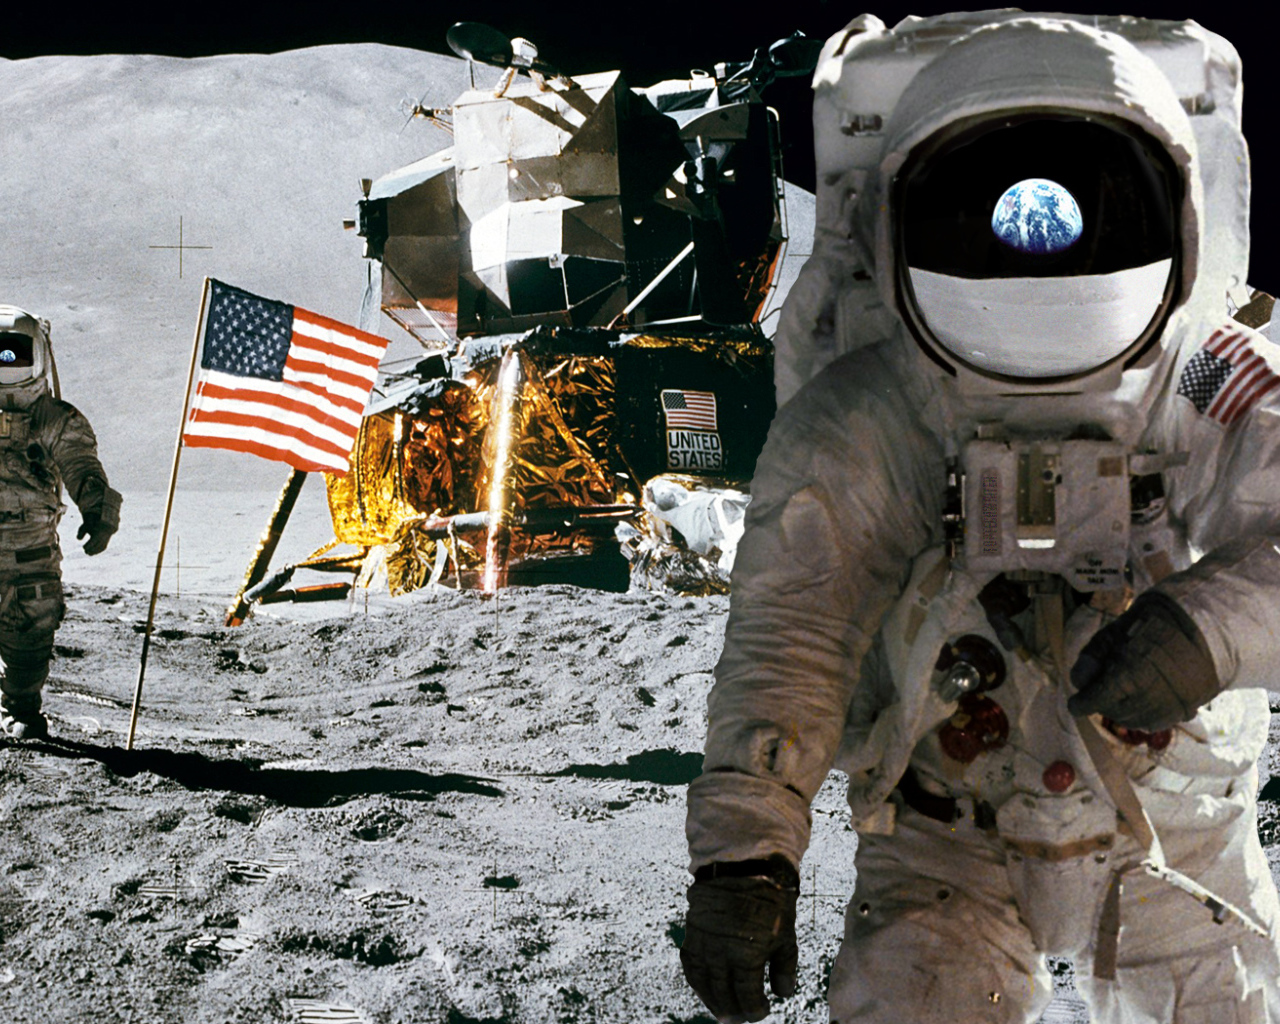 Американские космонавты на луне